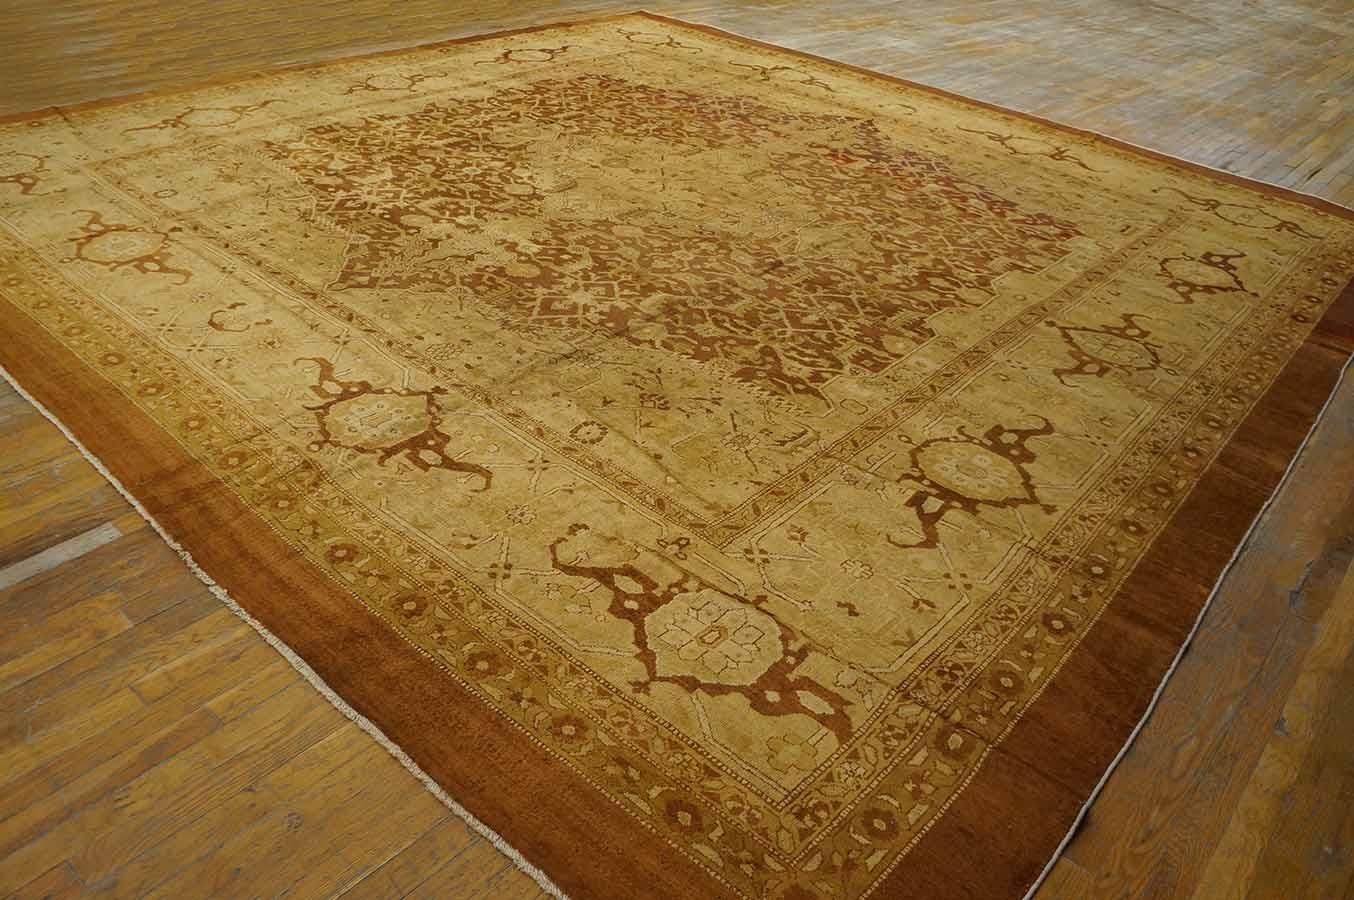 Indischer Agra-Teppich des frühen 20. Jahrhunderts ( 14' X 14' - 427 x 427)
Jedes persische Design wurde in Agra interpretiert, und dieser Teppich aus der Zeit um 1900 schöpft aus den besten Quellen: Wolkenbänder, geschwungene Blätter,